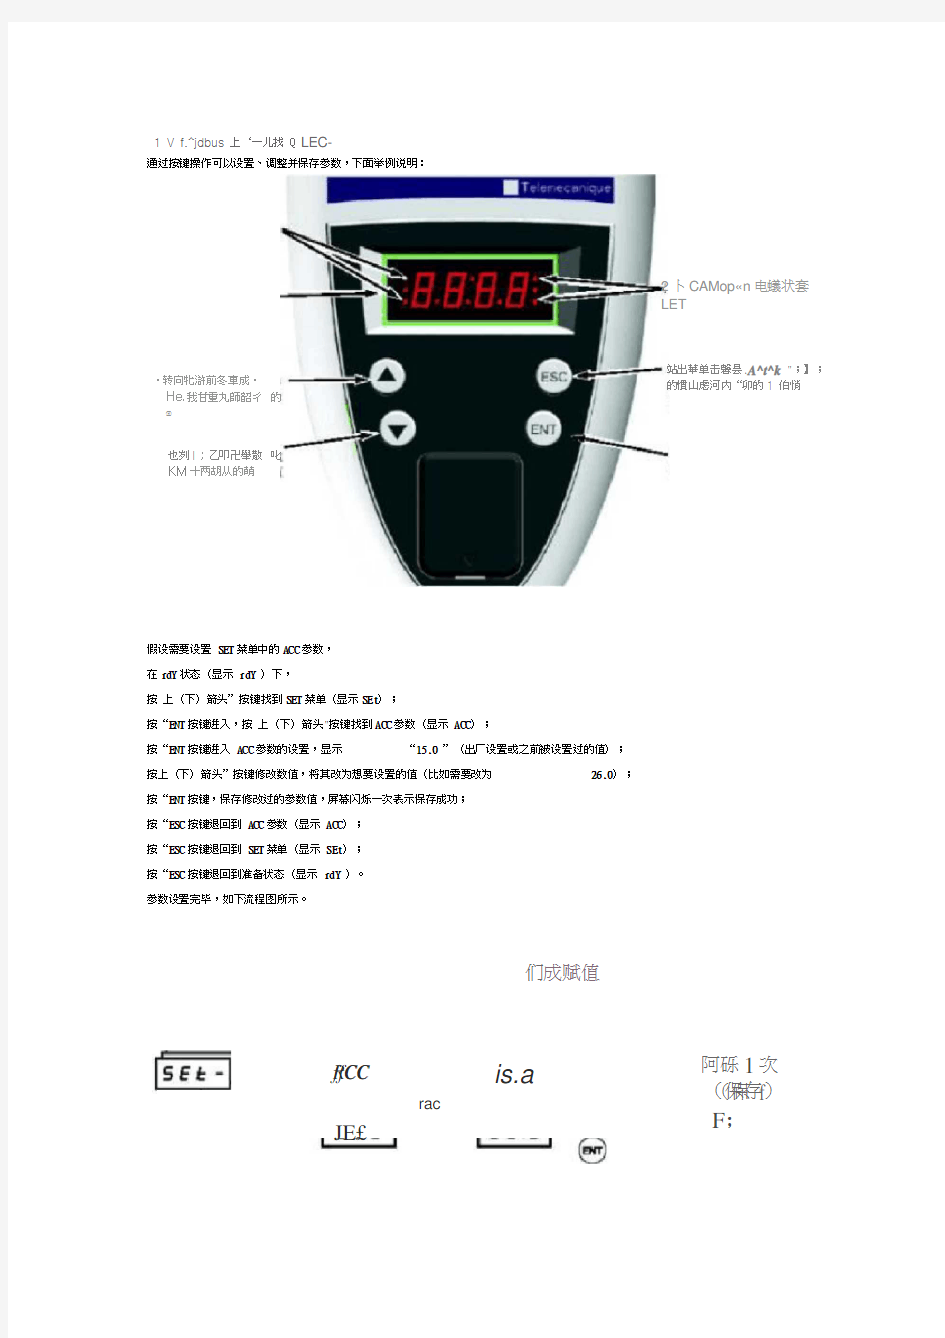 ATV61变频器调试手册